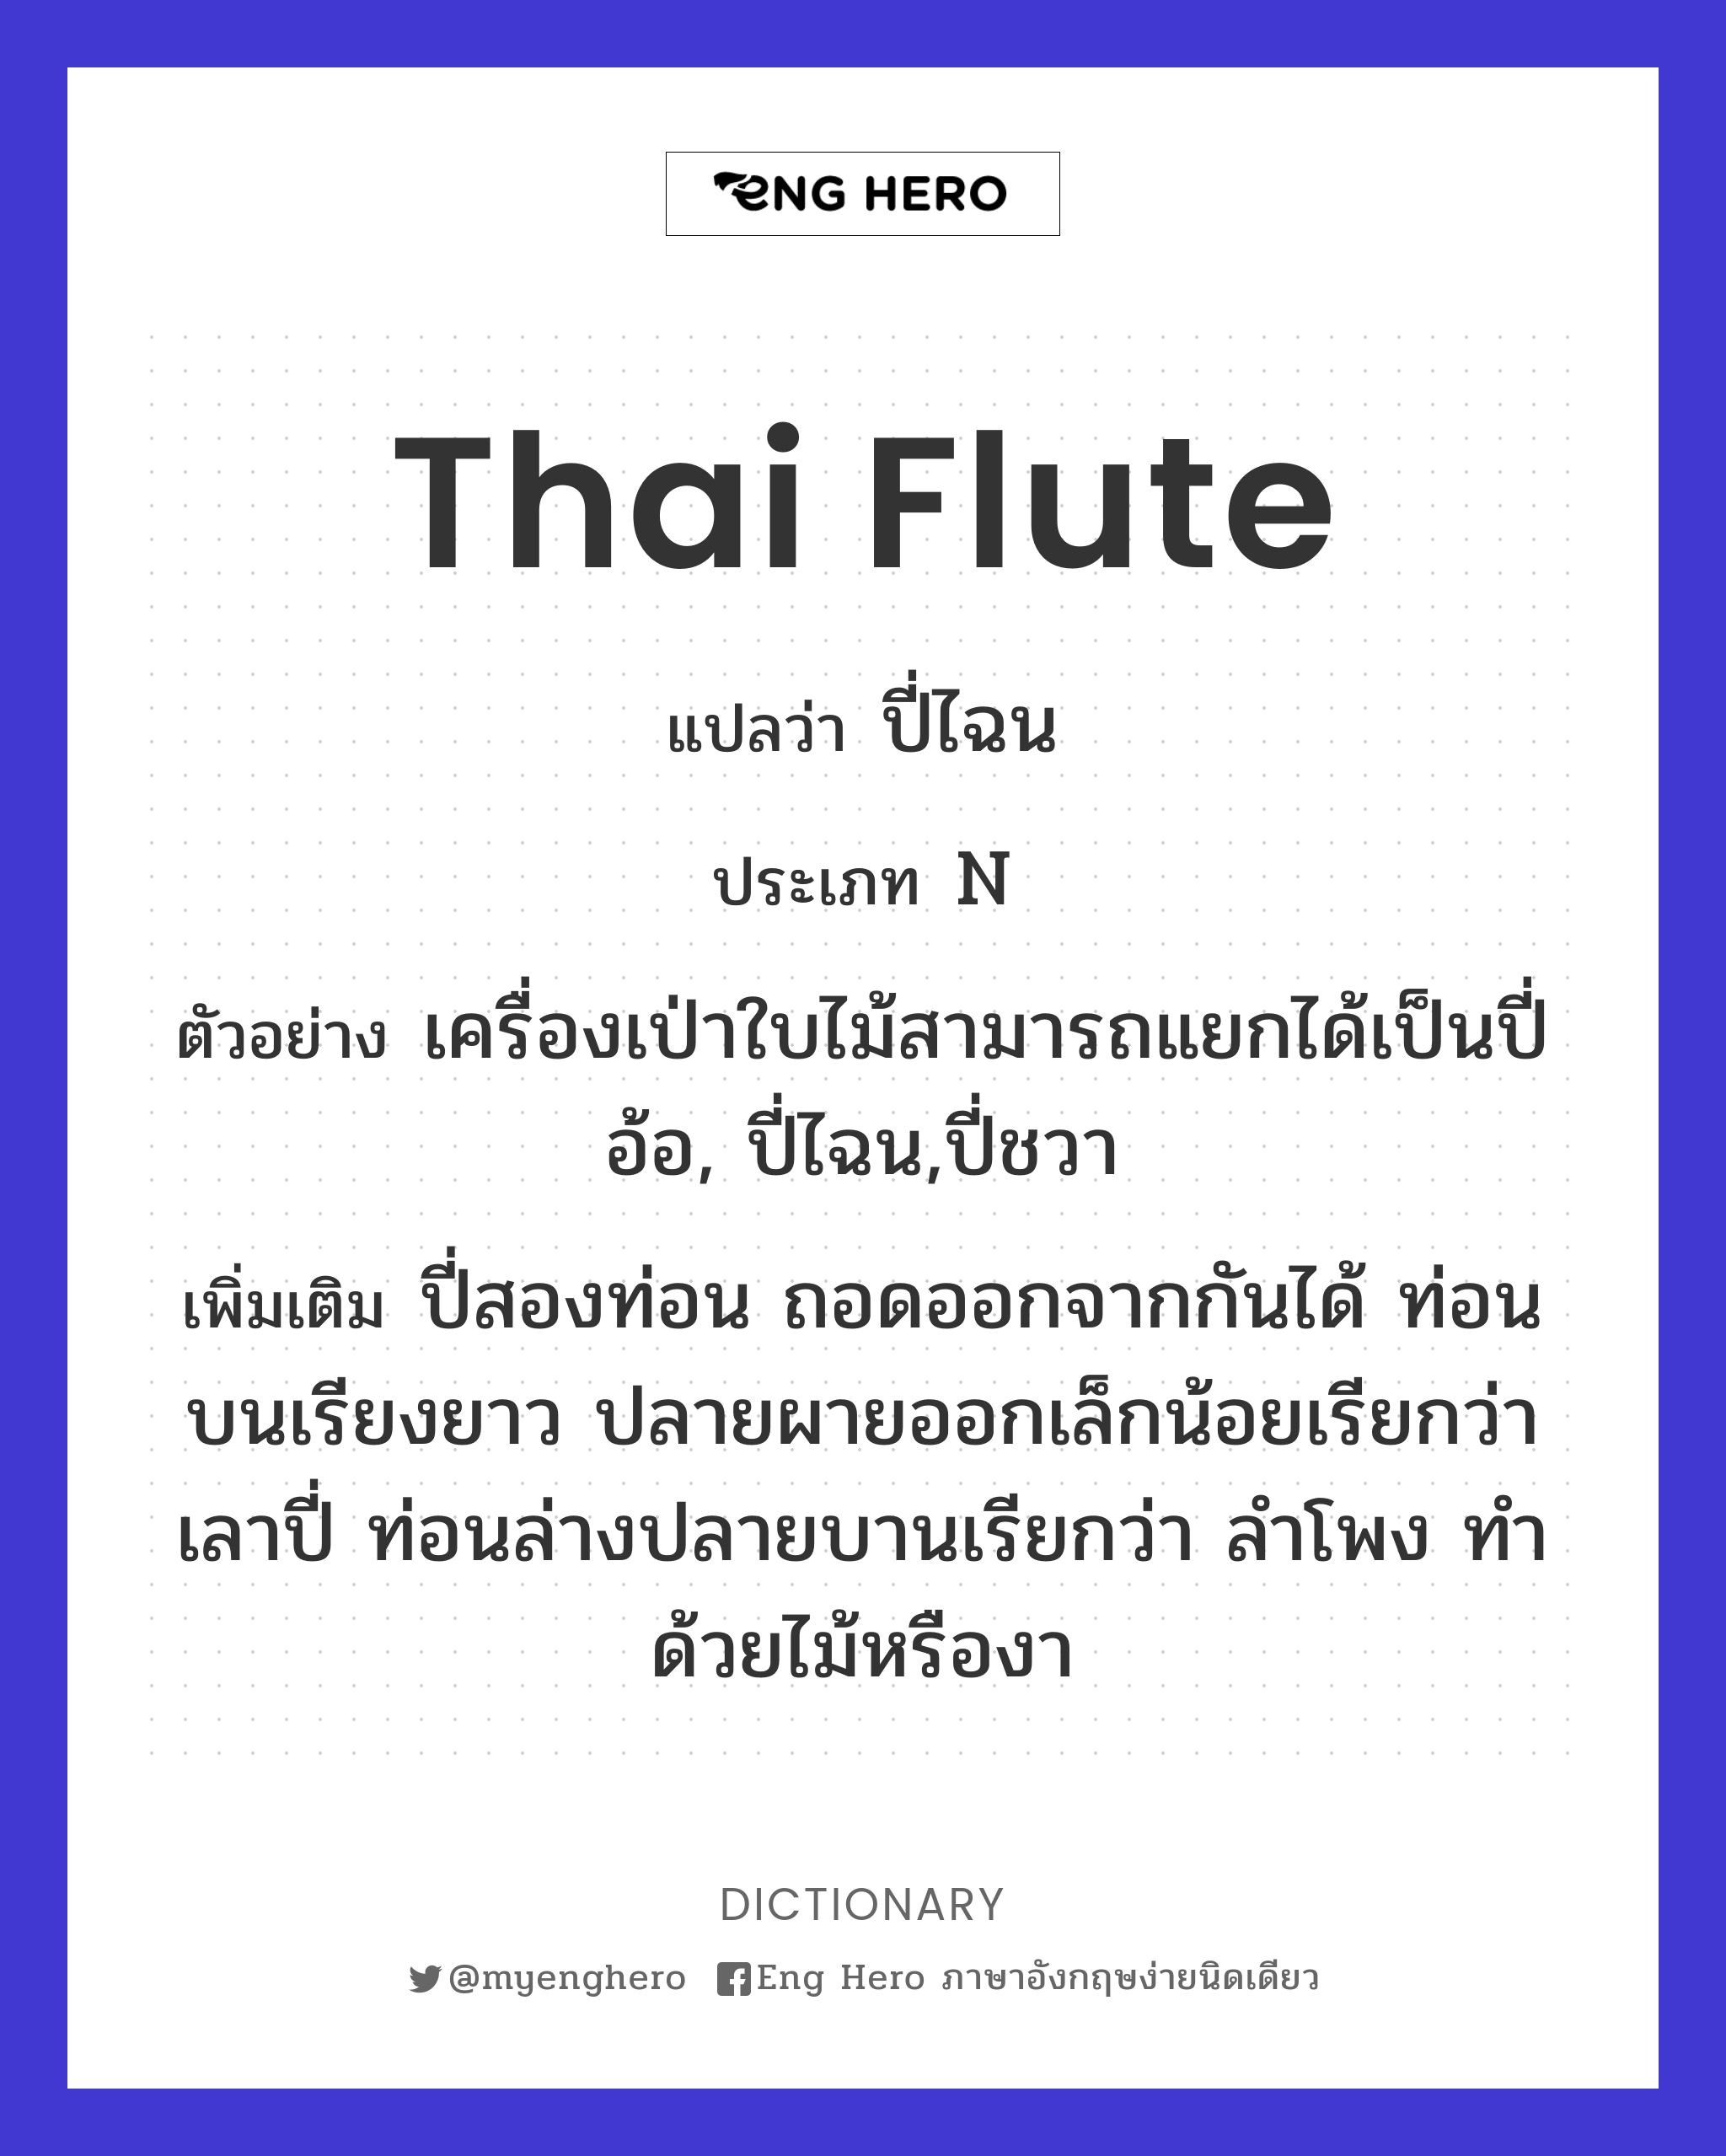 Thai flute